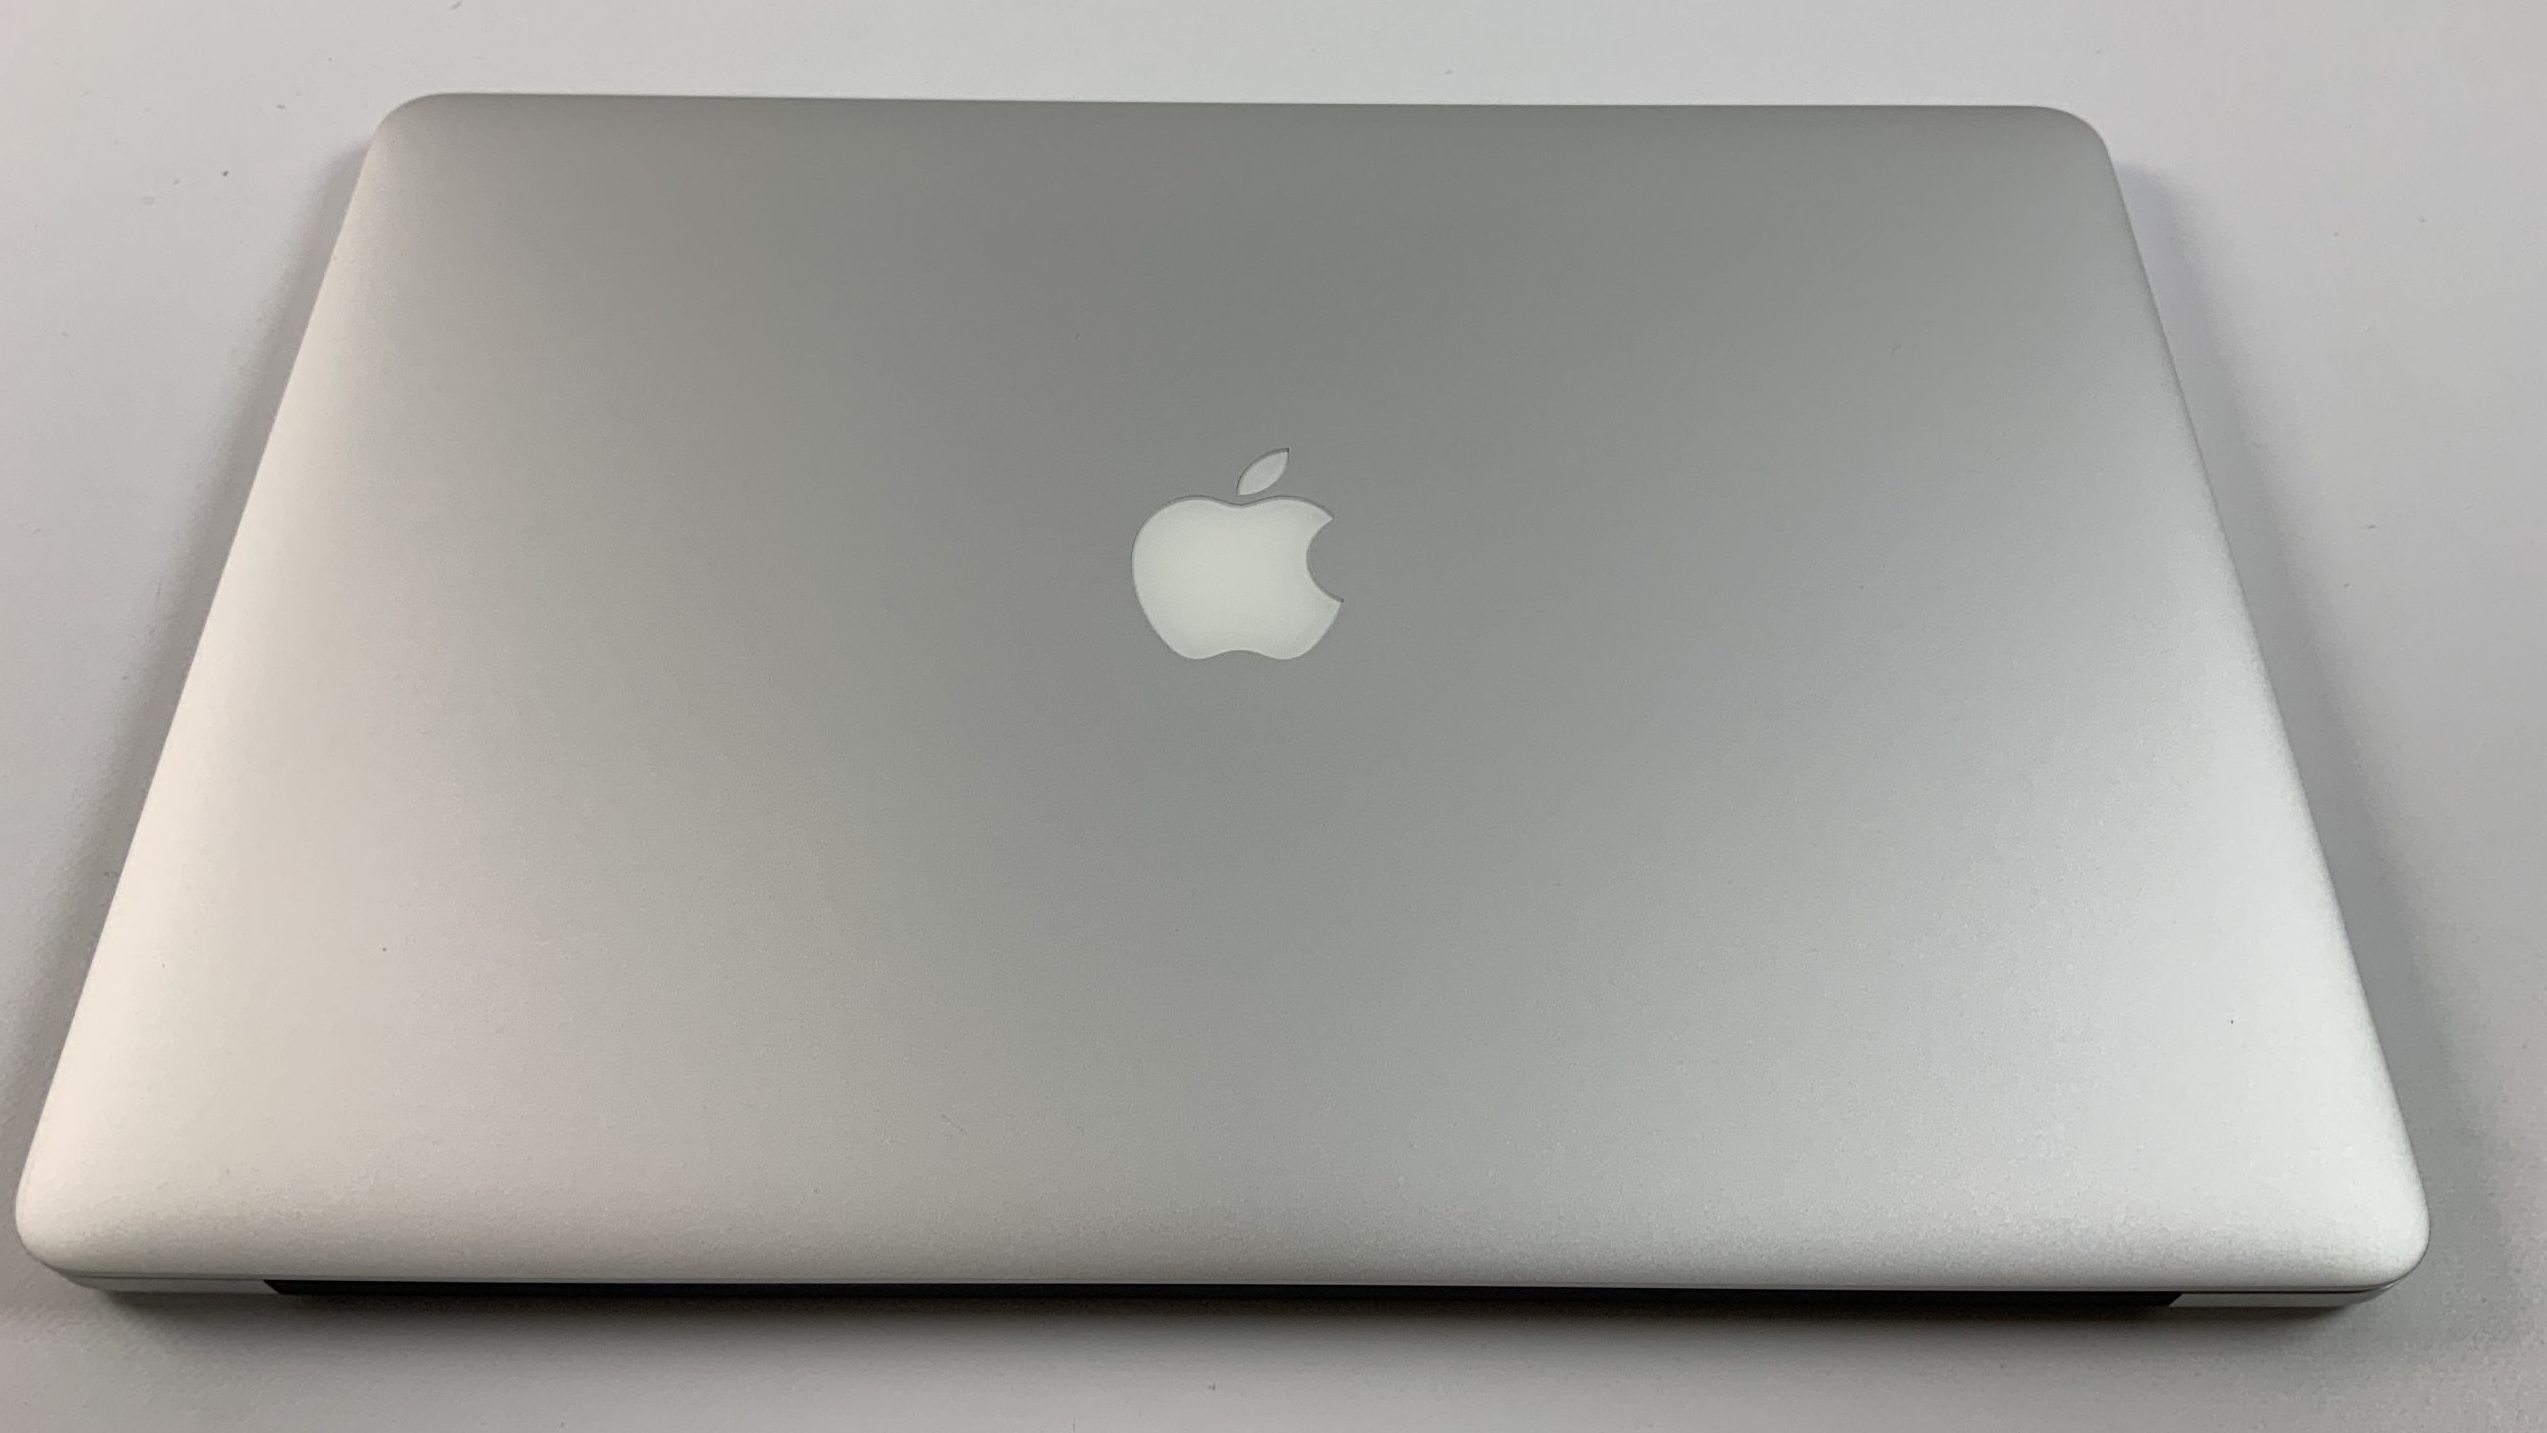 MacBook Pro Retina 15" Mid 2014 (Intel Quad-Core i7 2.2 GHz 16 GB RAM 256 GB SSD), Intel Quad-Core i7 2.2 GHz, 16 GB RAM, 256 GB SSD, Afbeelding 2